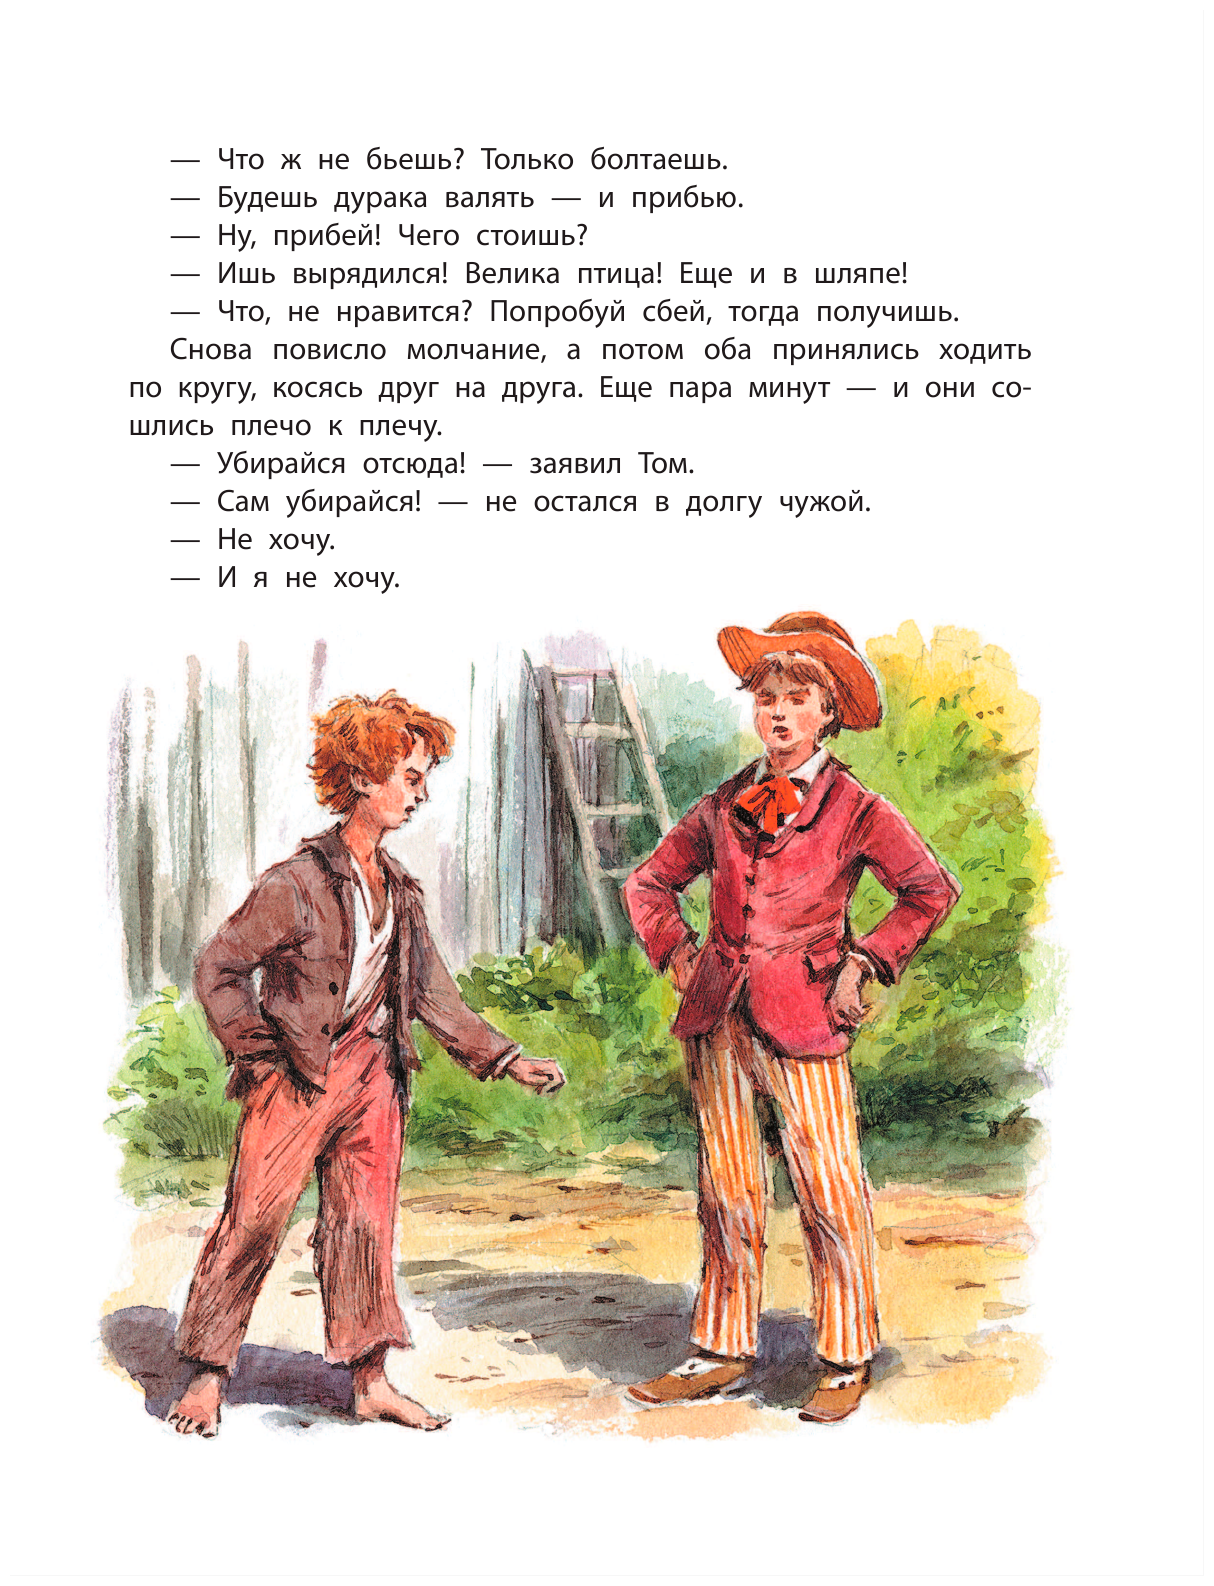 Читать тома сойера по главам. Твен м. "приключения Тома Сойера". Иллюстрация к рассказу марка Твена приключения Тома Сойера.